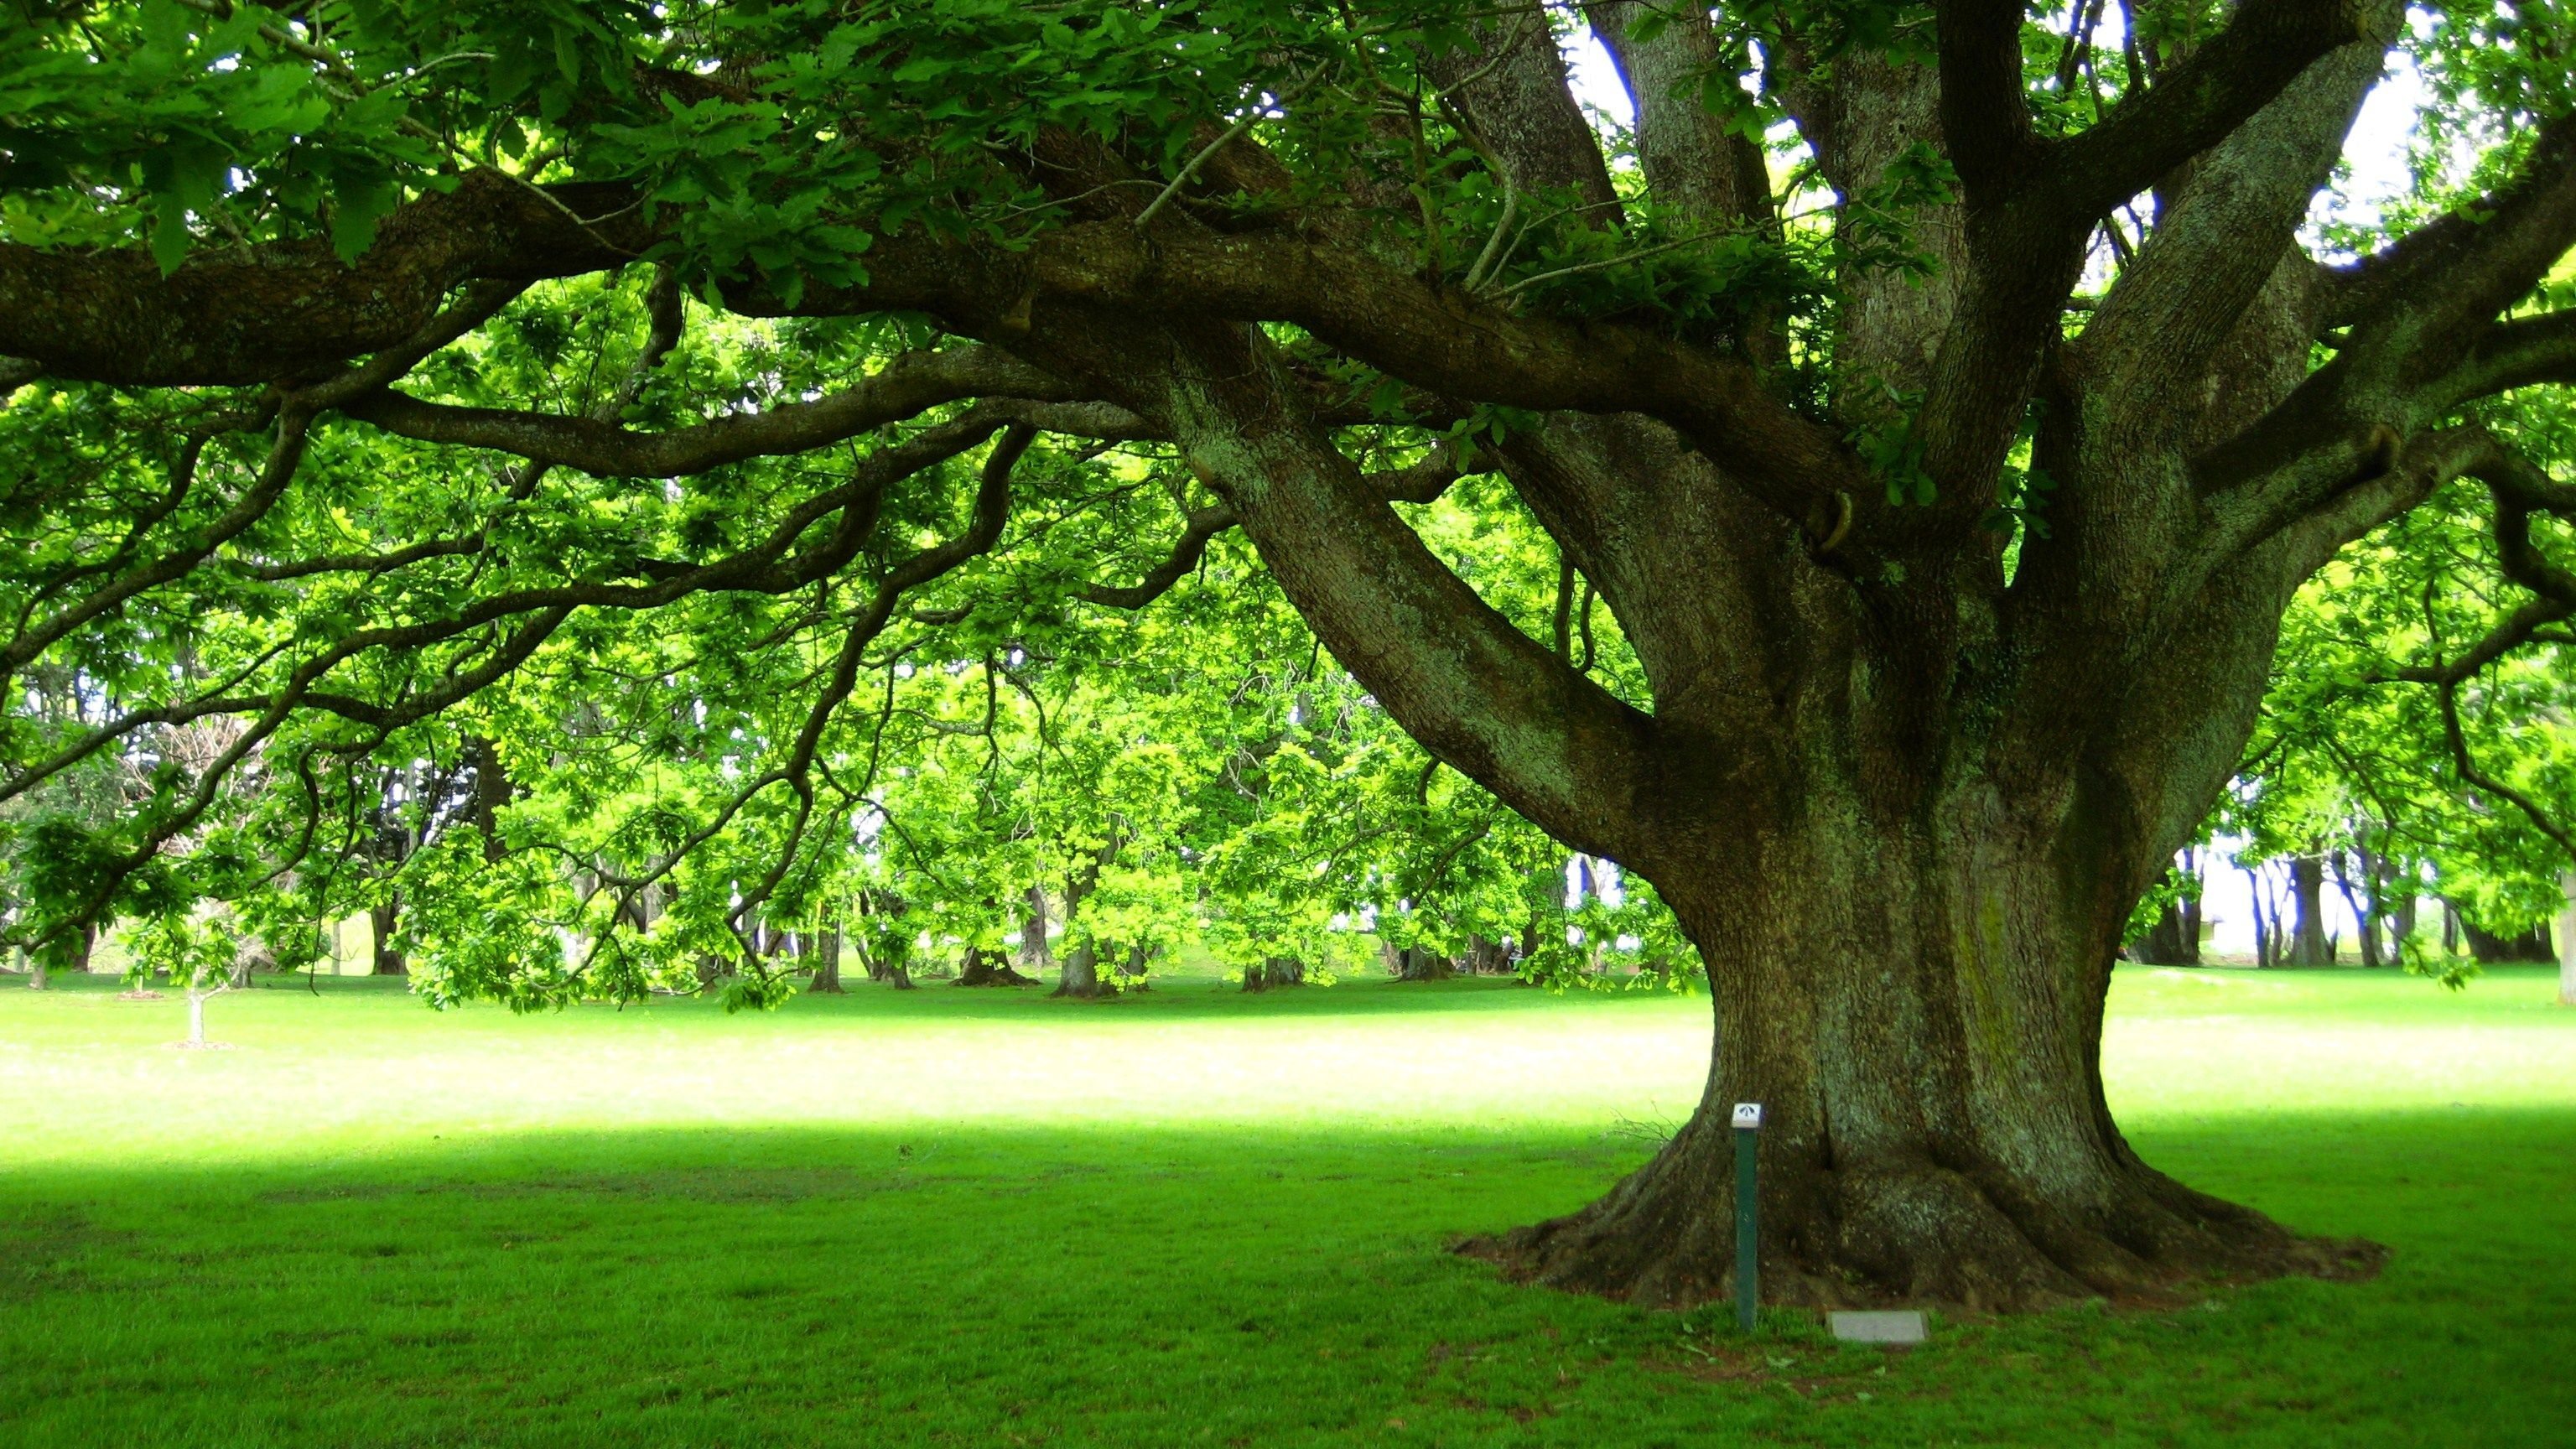 Дерево гуд. Дуб Джурупа дерево. Дуб парк Фредвилл, Нонингтон, Великобритания. Дуб черешчатый крона. Дерево с большой кроной.